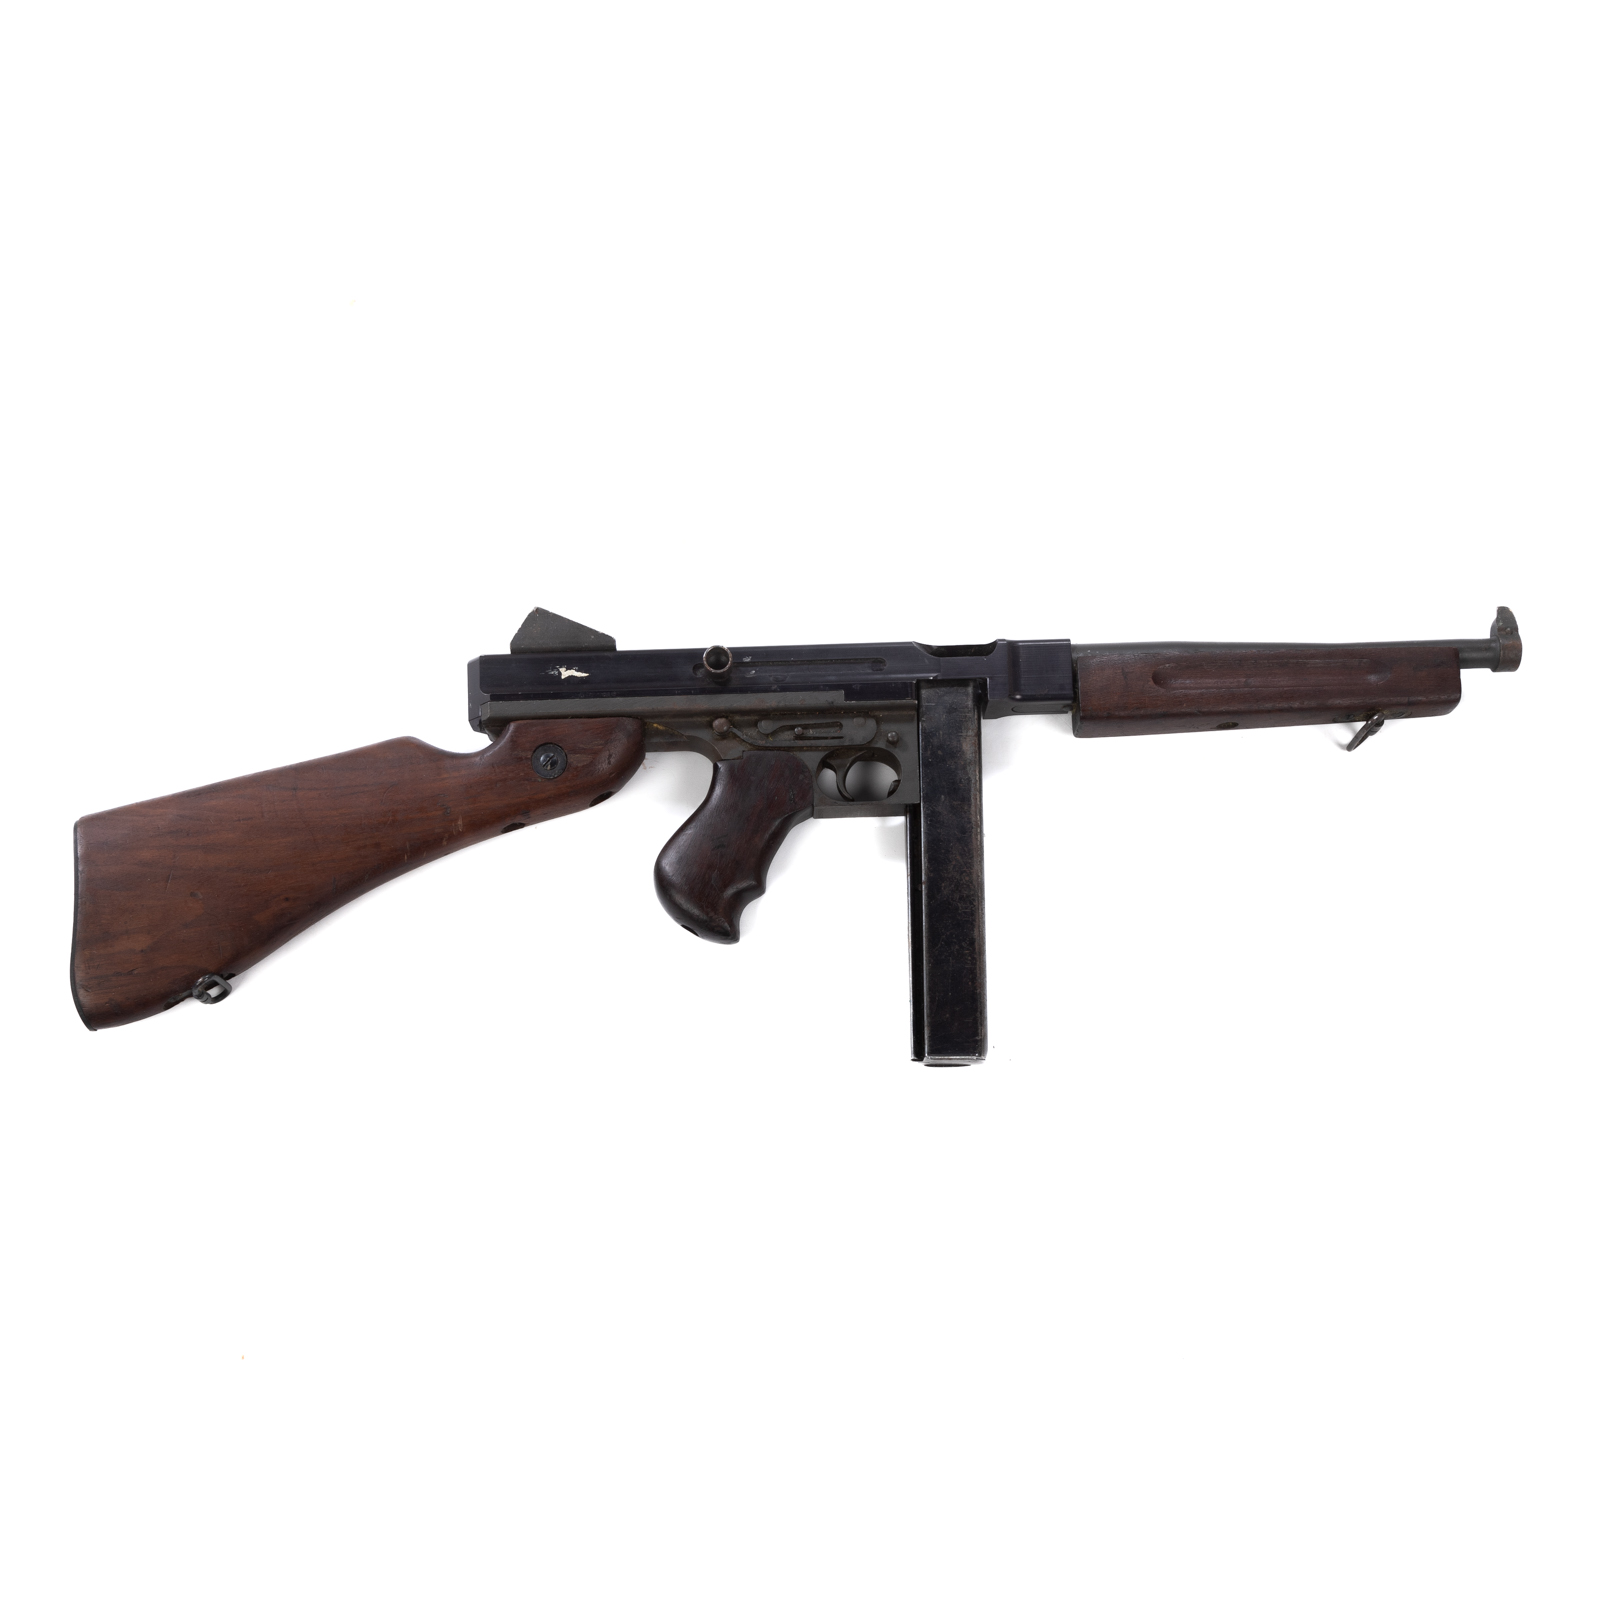 MODEL MIA1 THOMPSON MACHINE GUN 2e904c